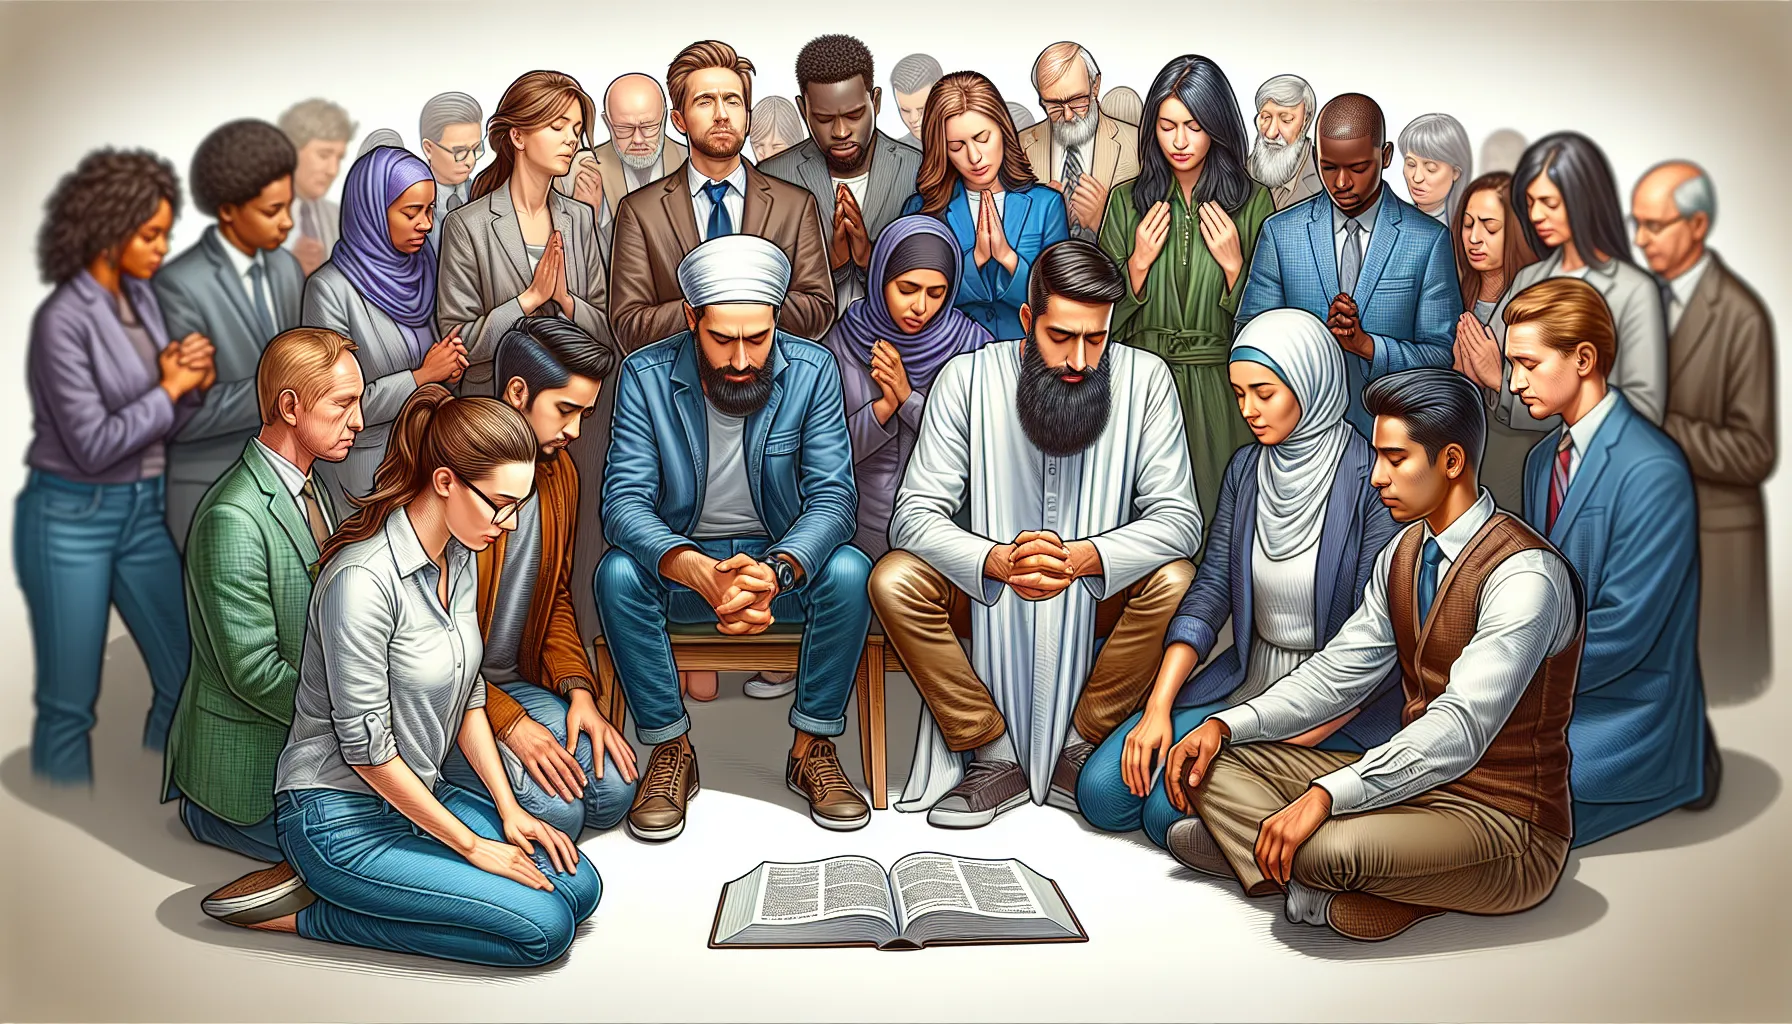 Imagen de un grupo de personas protestantes reunidas en oración y discusión